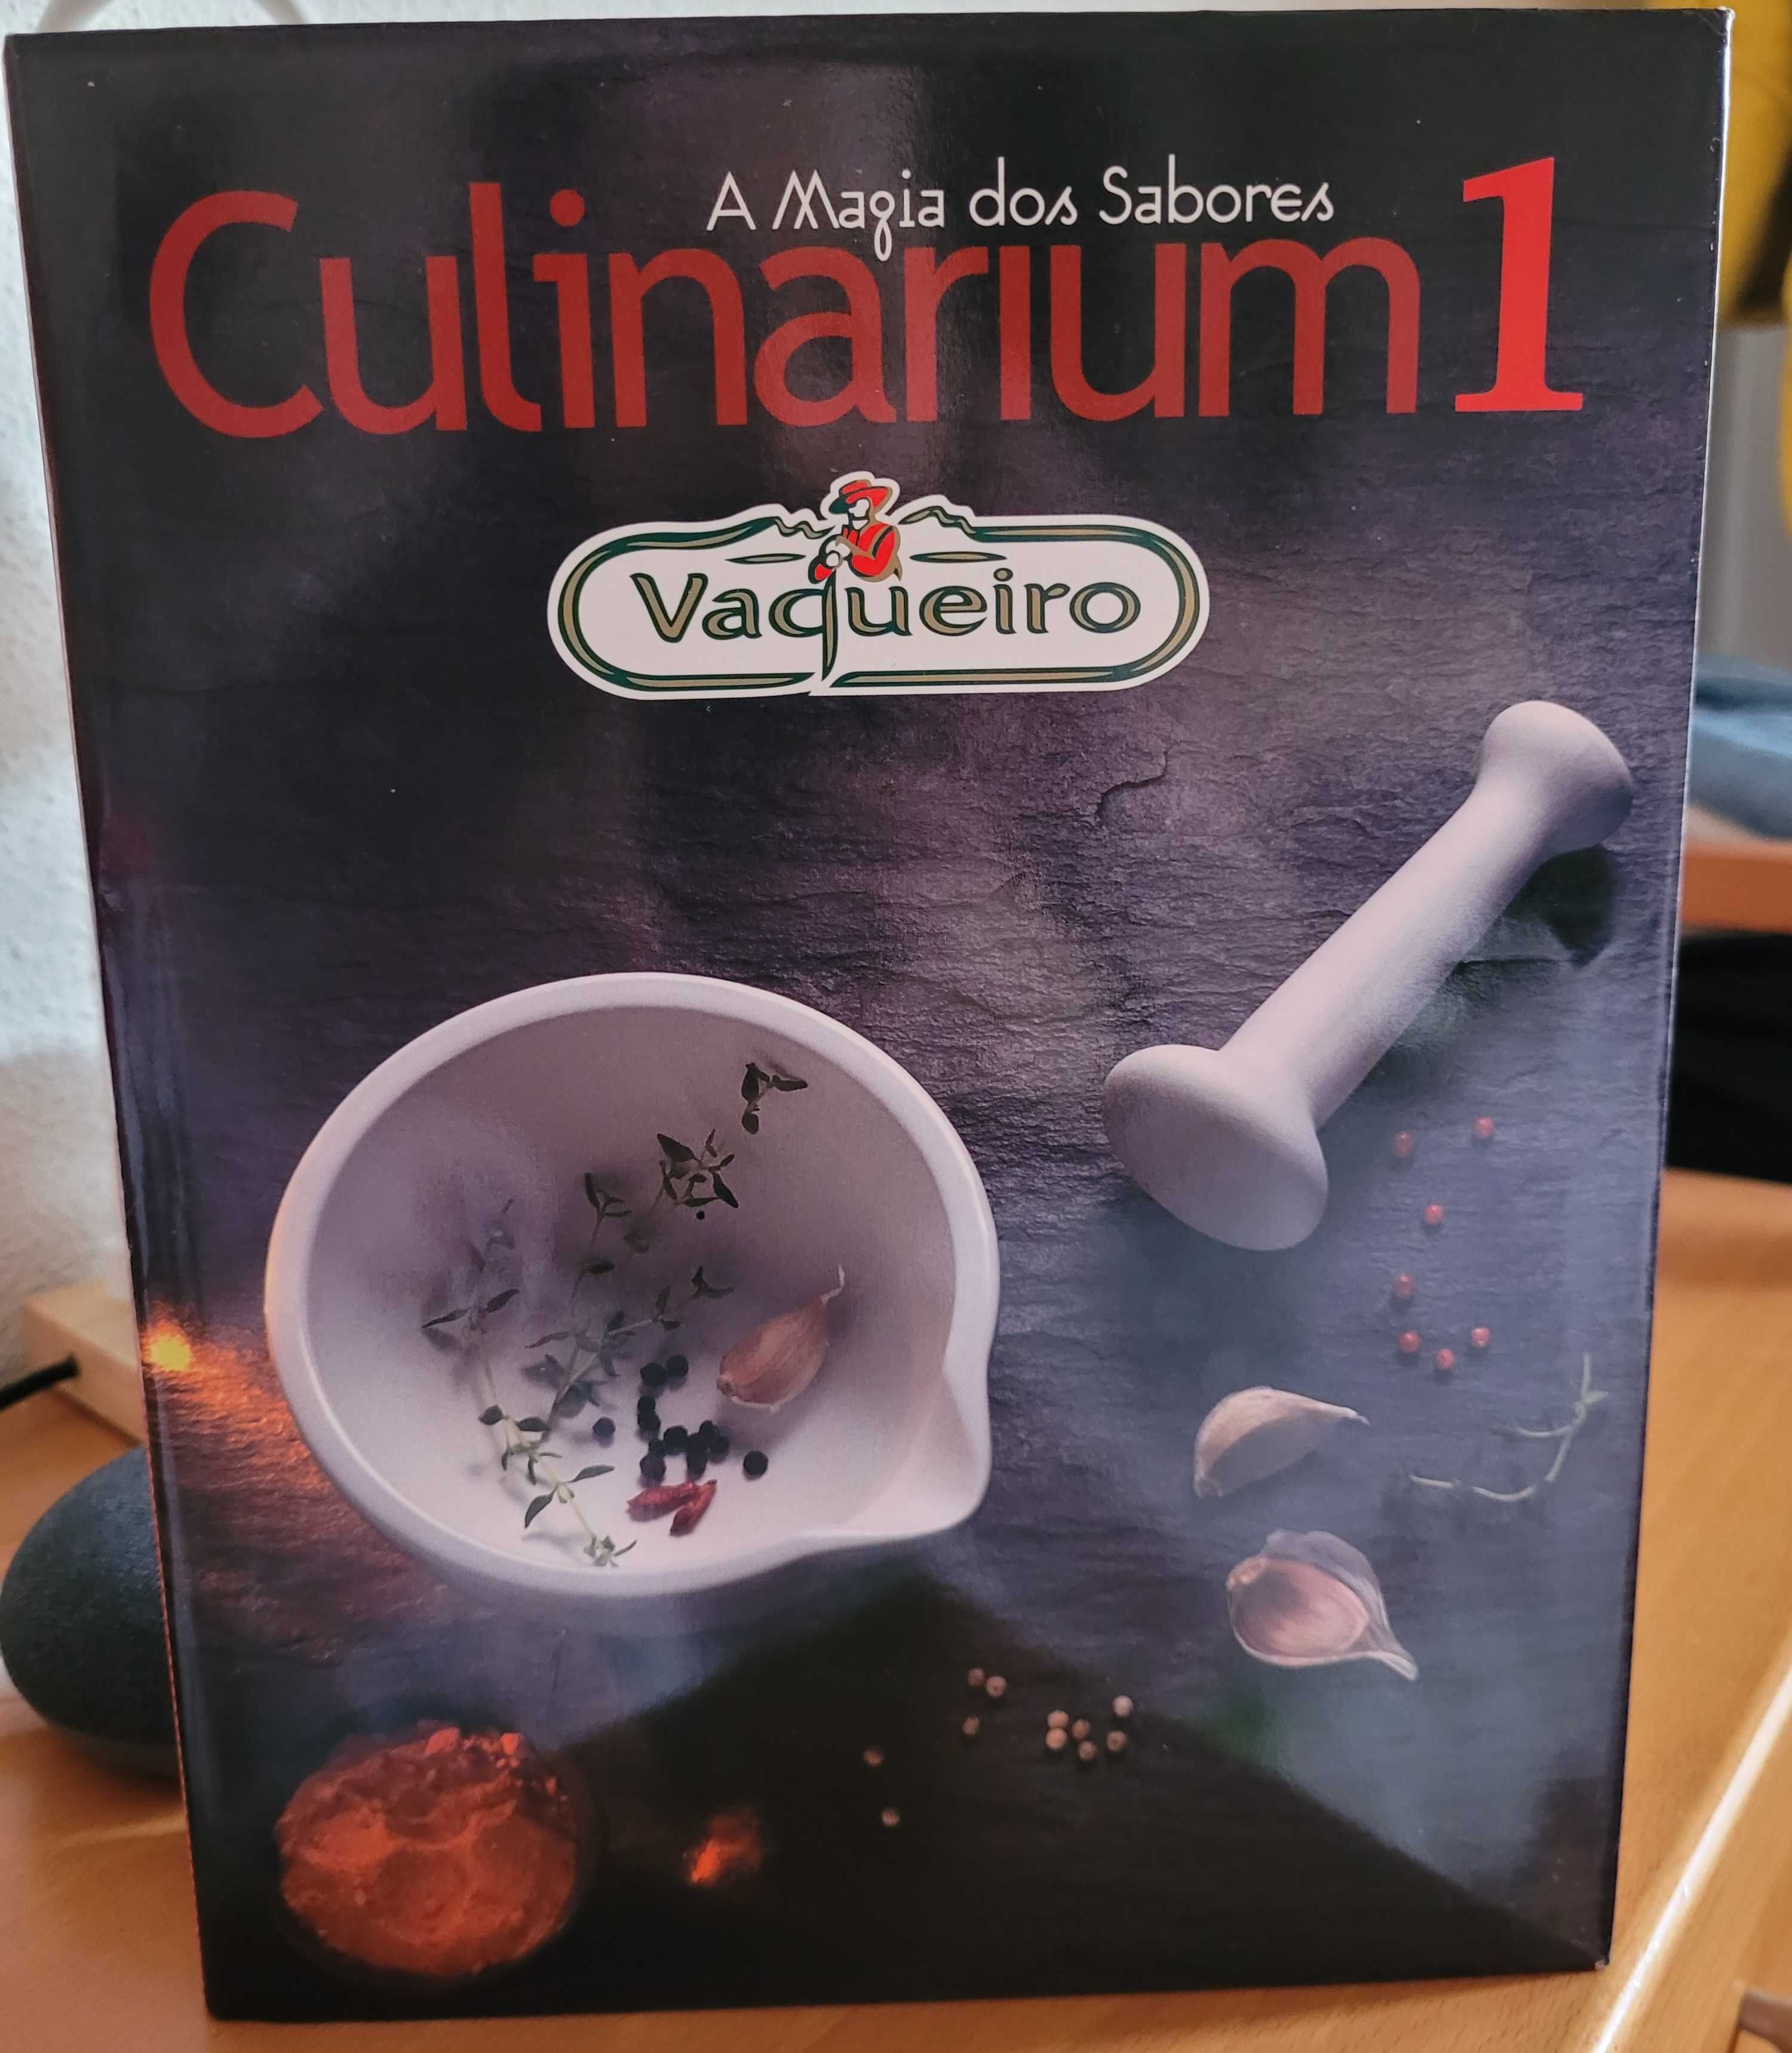 Vaqueiro Culinarium - A Magia dos Sabores